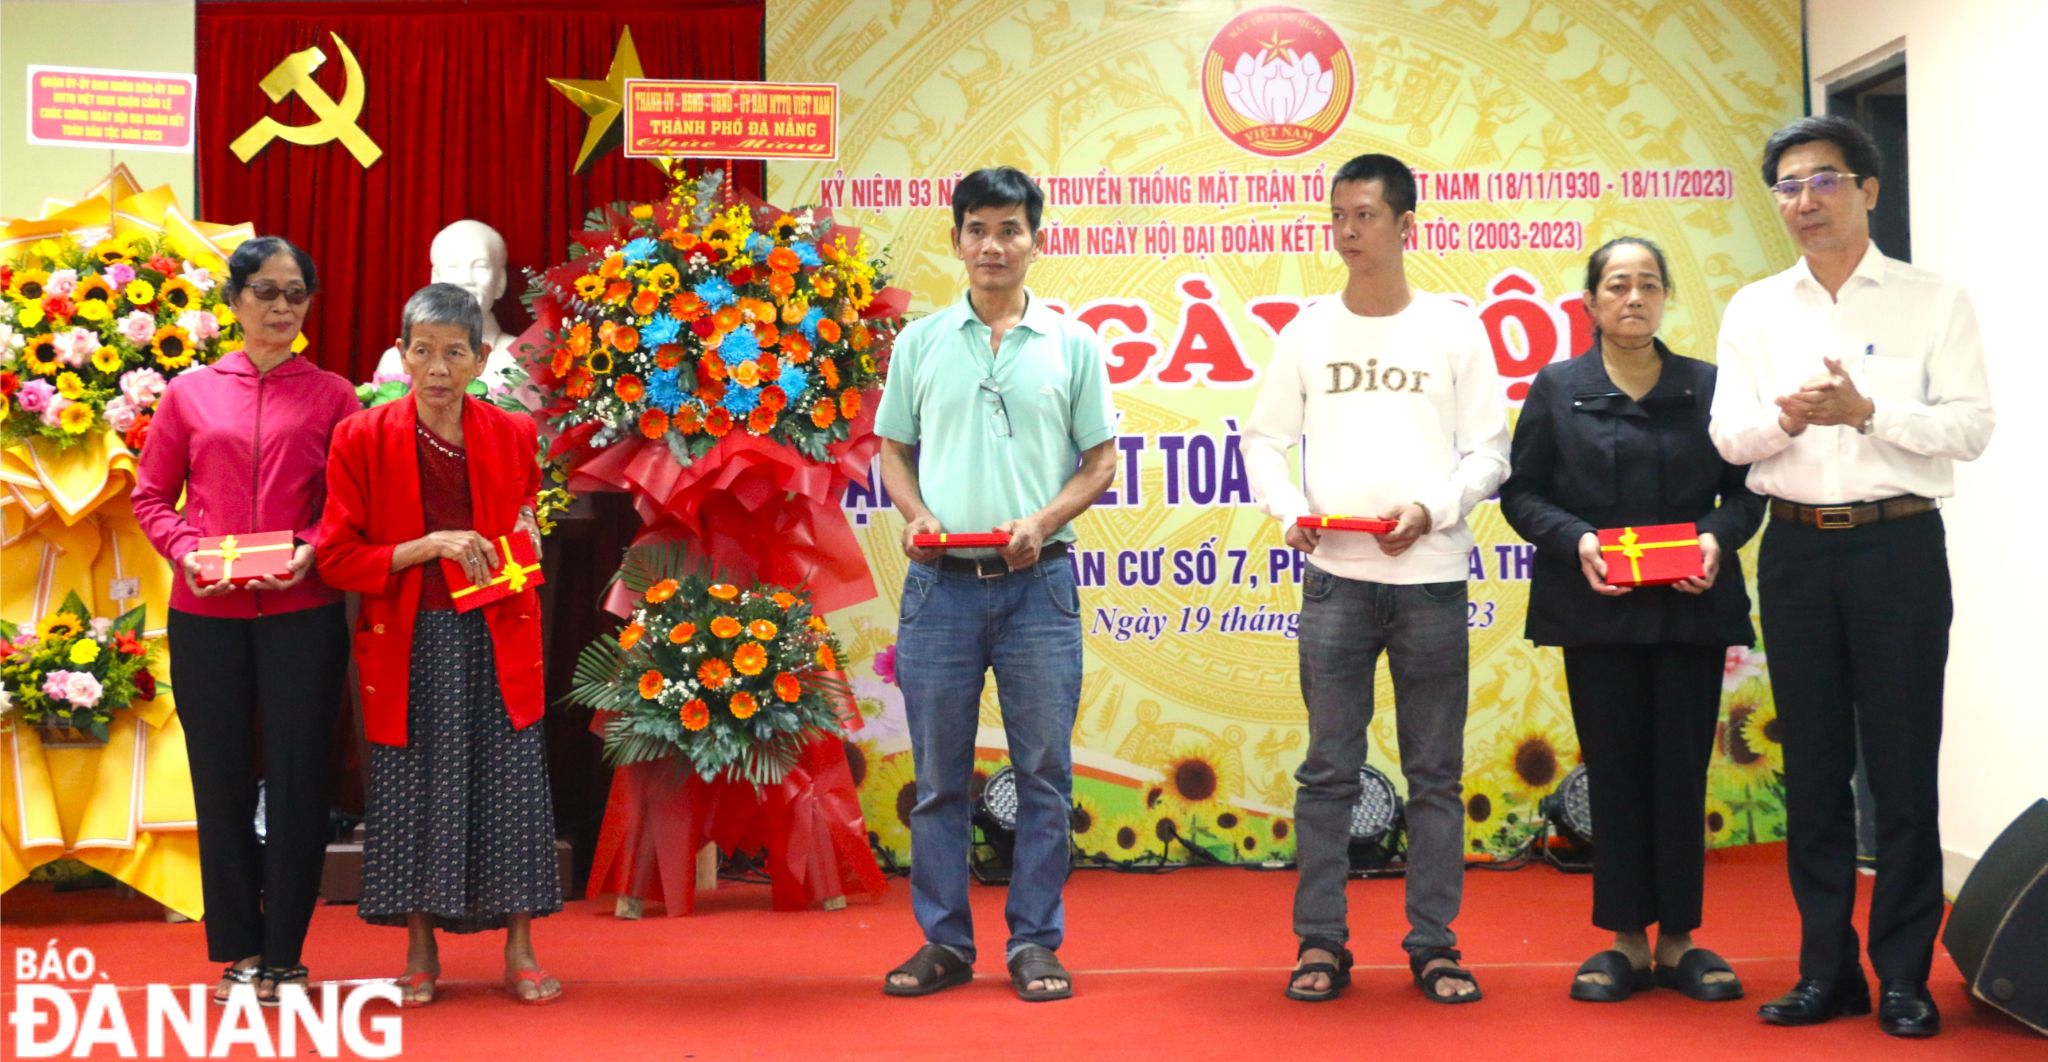 Phó Chủ tịch UBND Trần Chí Cường trao quà cho 5 hộ nghèo trên địa bàn KDC. Ảnh: T.PHƯƠNG